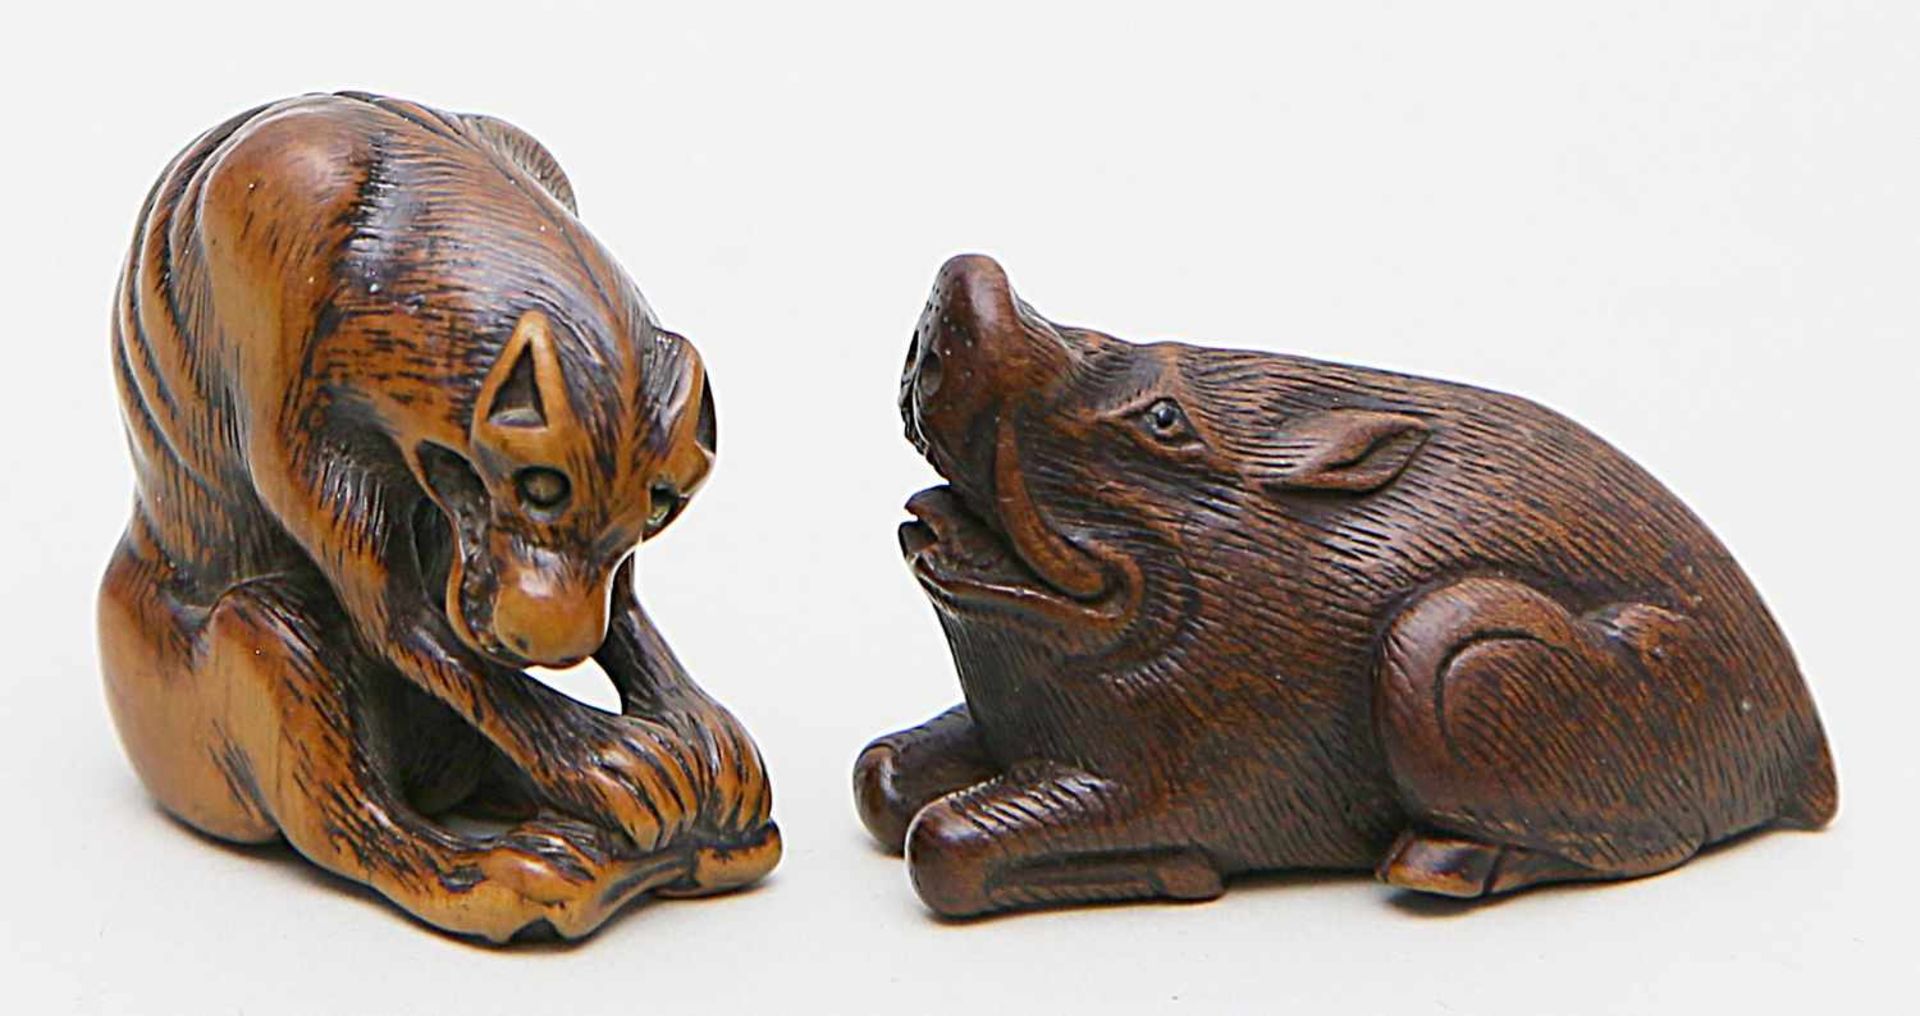 Zwei Netsukes.Eber und abgemagerter Wolf (okami) mit Rehkeule. Buchsbaum/Holz, teils dunkel